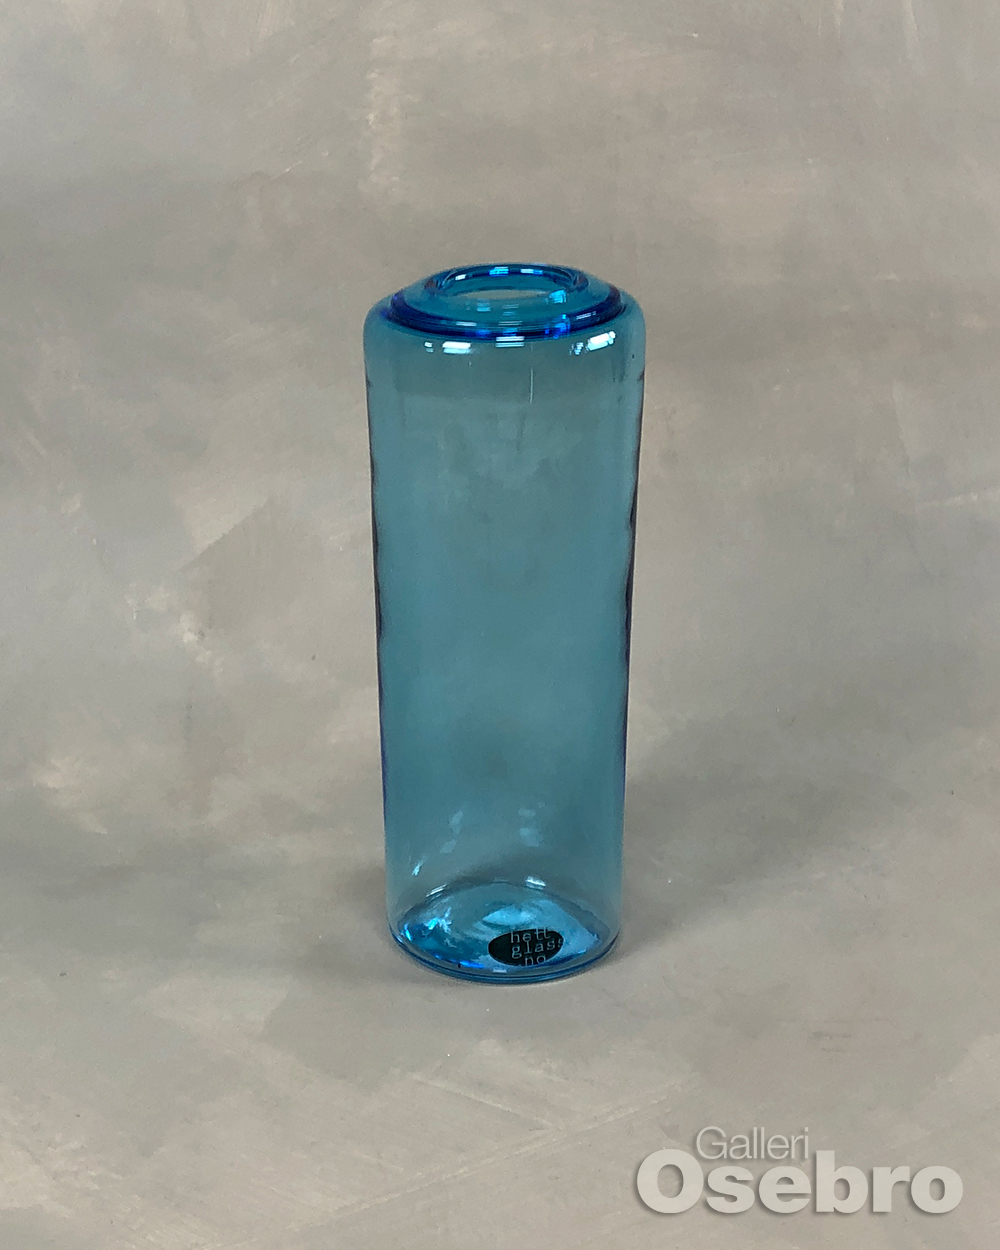 Larsson, Ellen - Sylindervase m/kant, blå